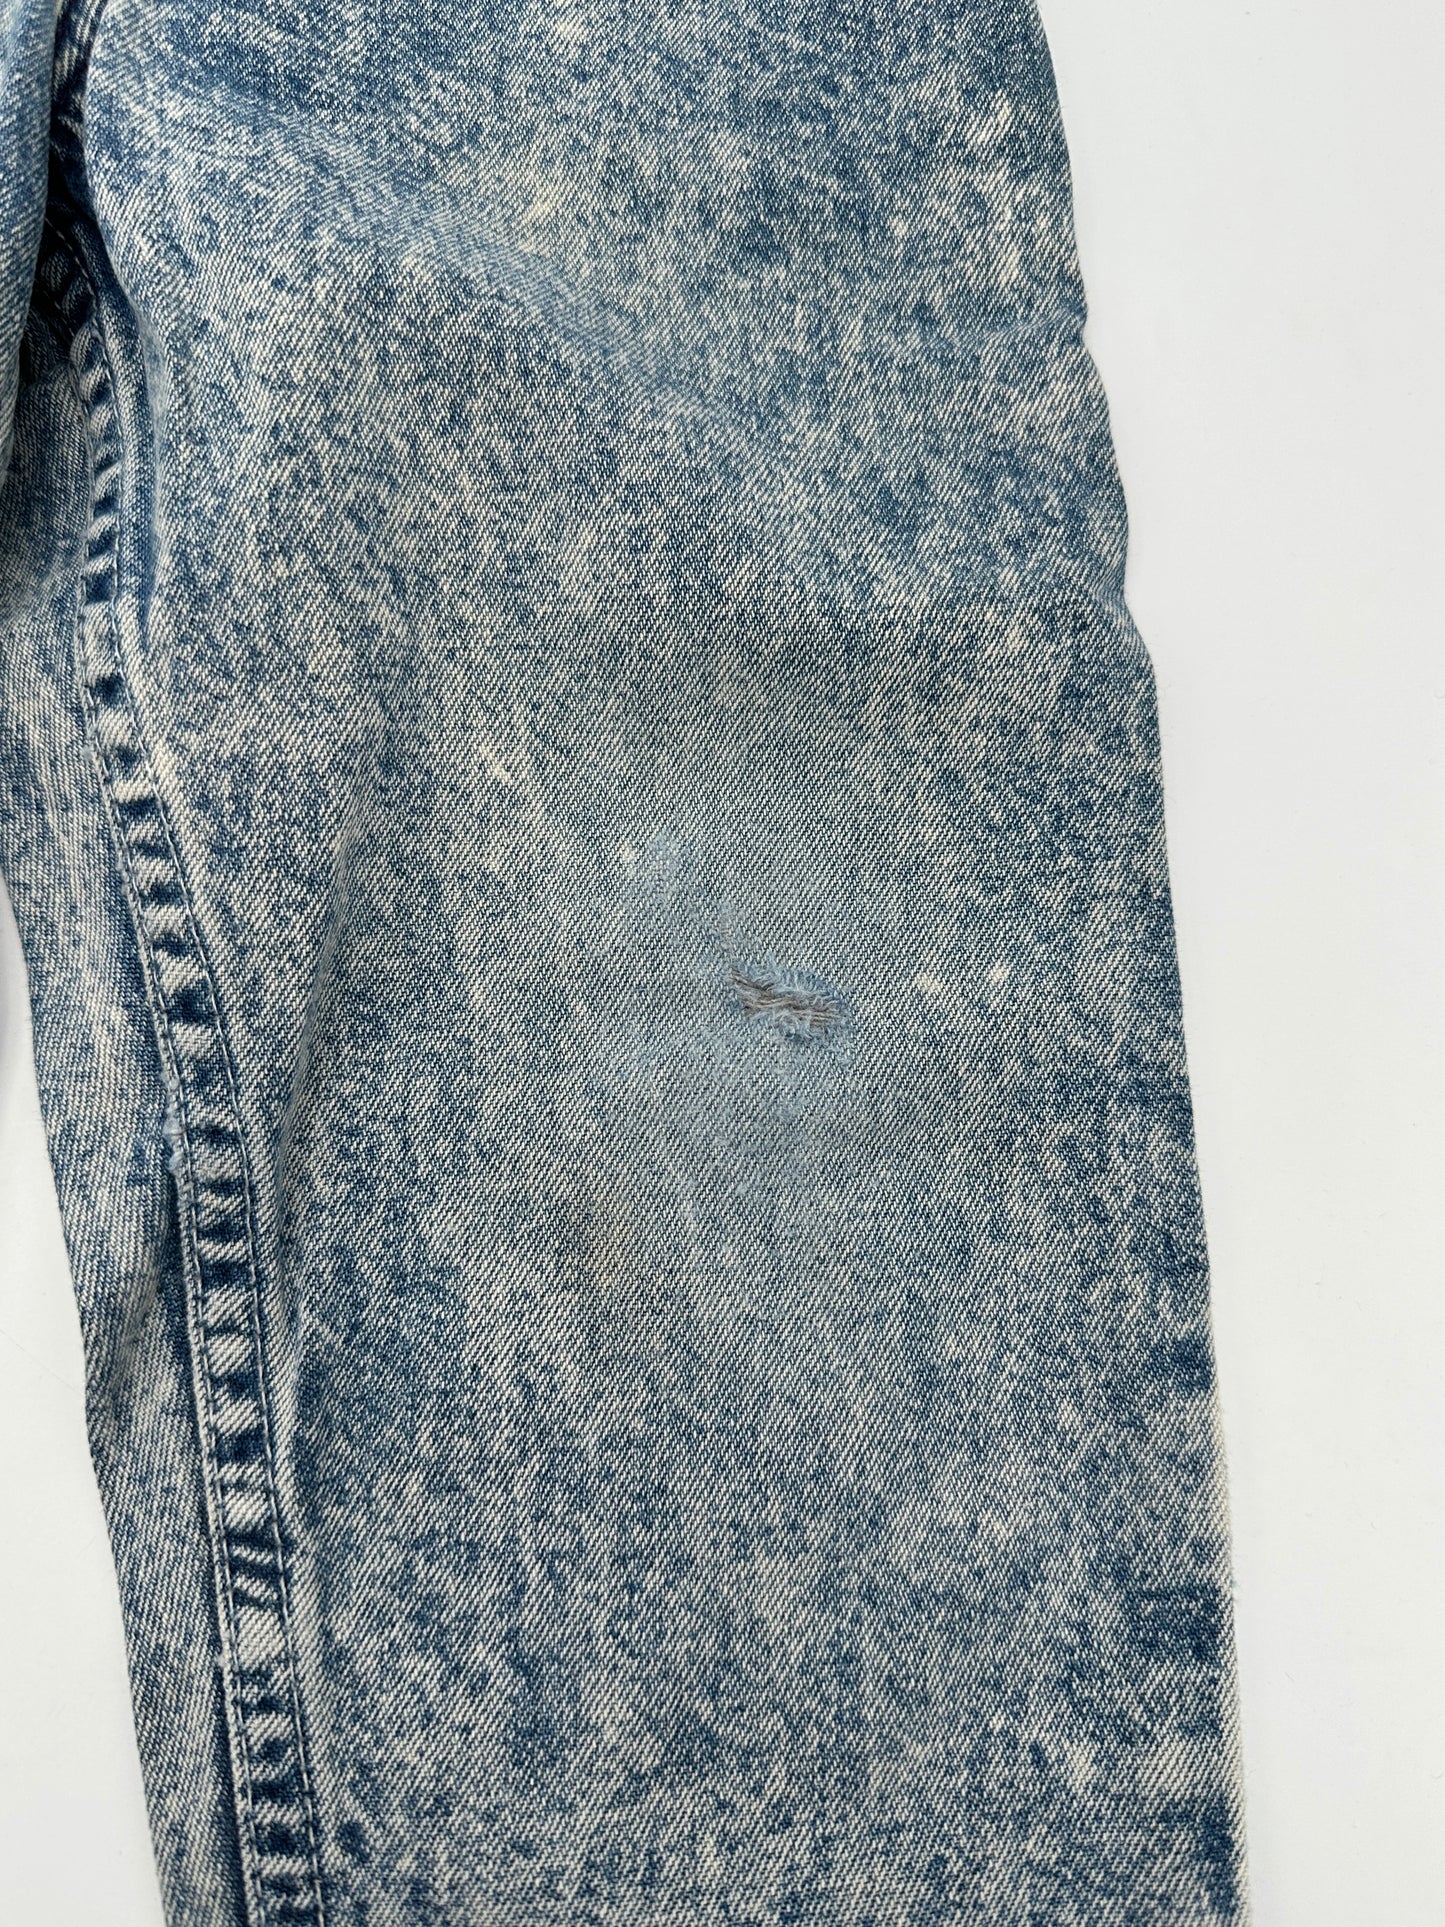 OshKosh Toddler Size 3T Blue Acid Wash Denim Carpenter Pants Jeans, Vintage